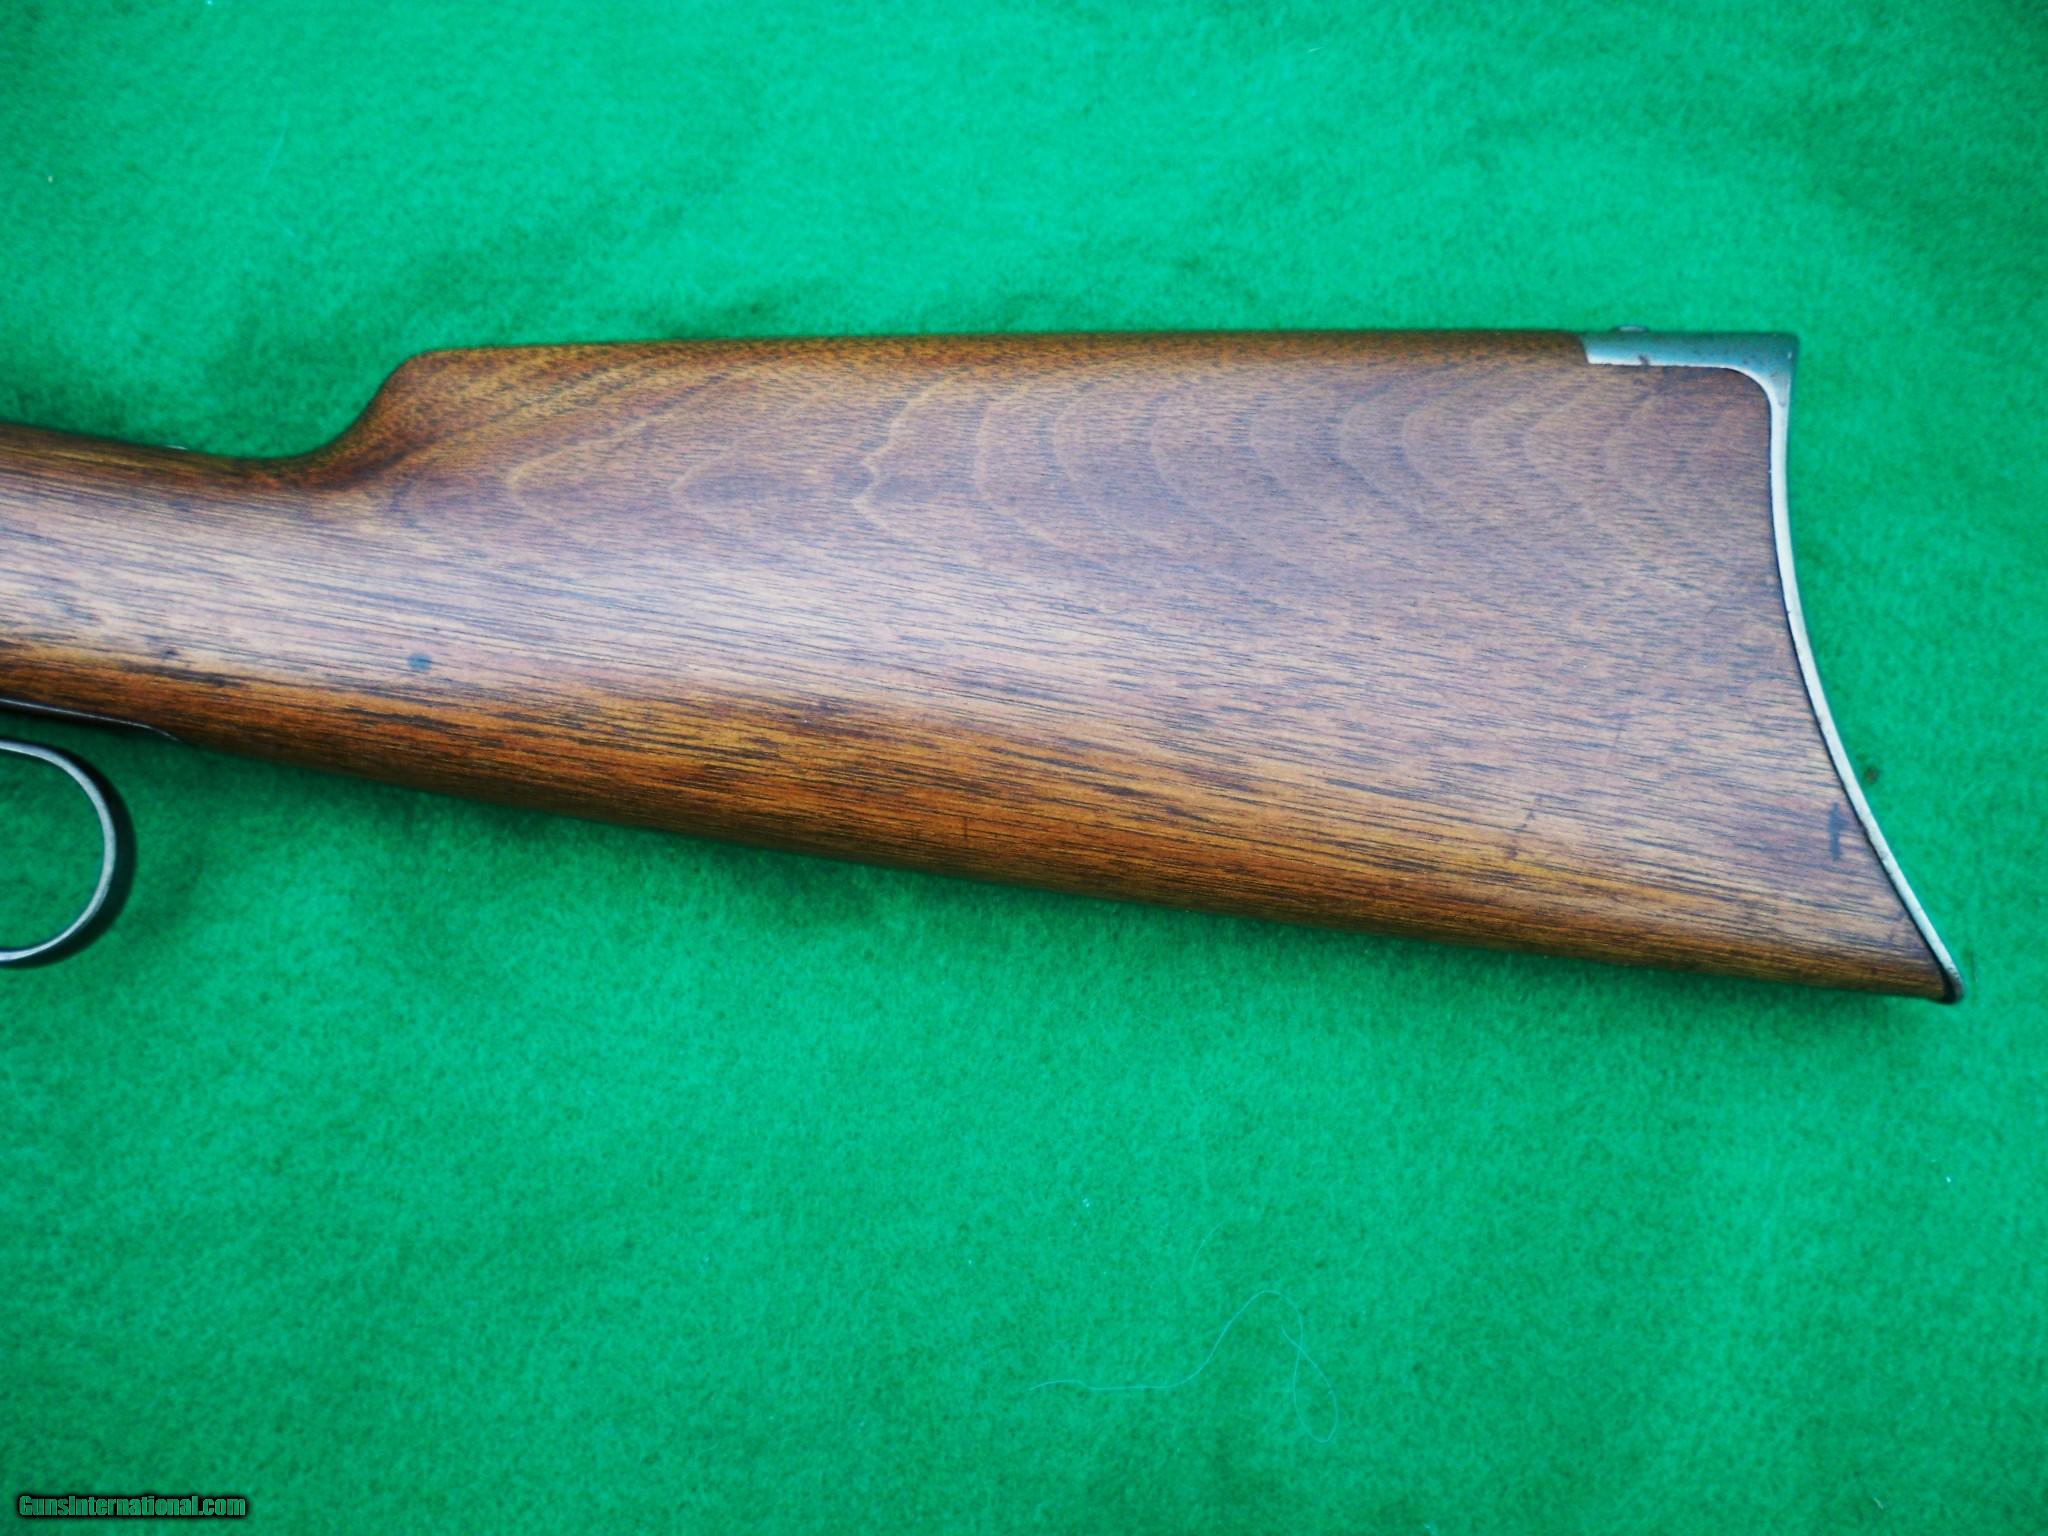 25-35 Winchester - Wikipedia